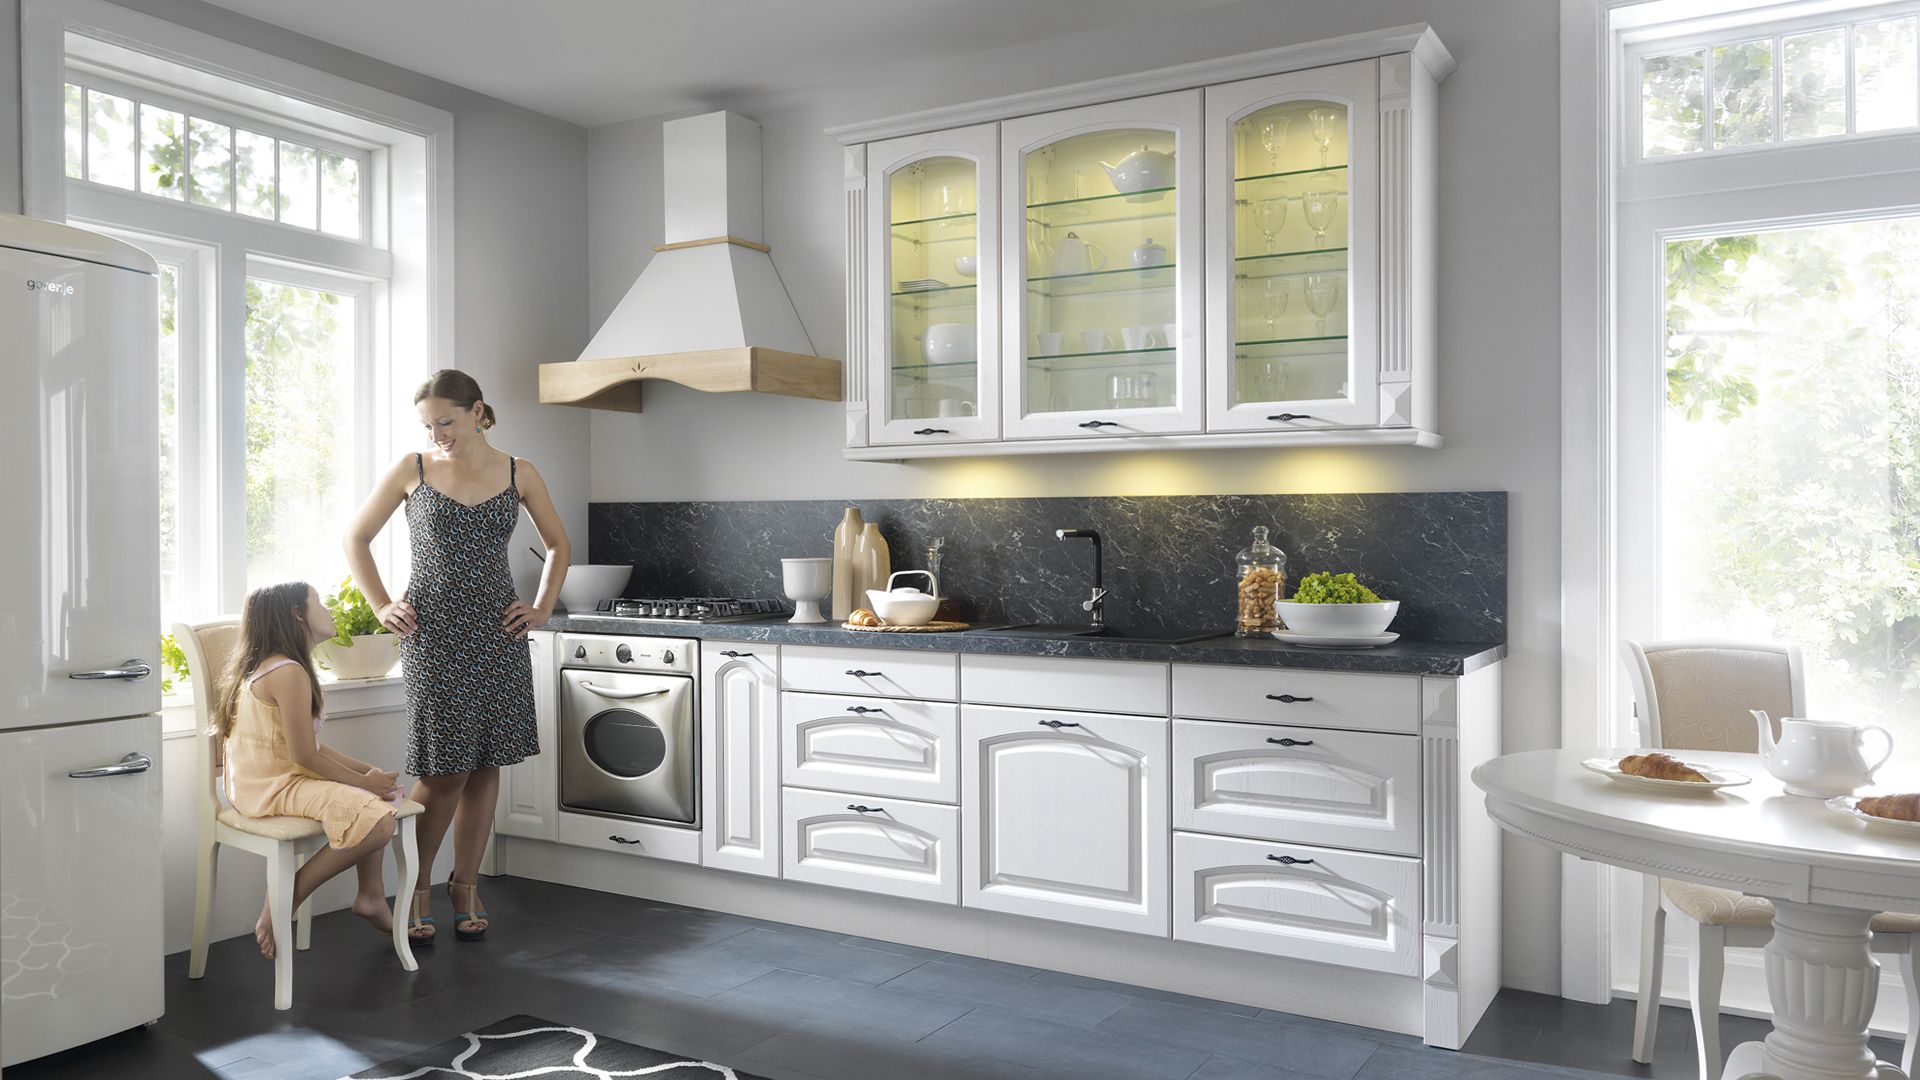 W kuchni z serii Senso szara okładzina ścienna i blat efektownie kontrastują z bielą mebli. Fot. BRW